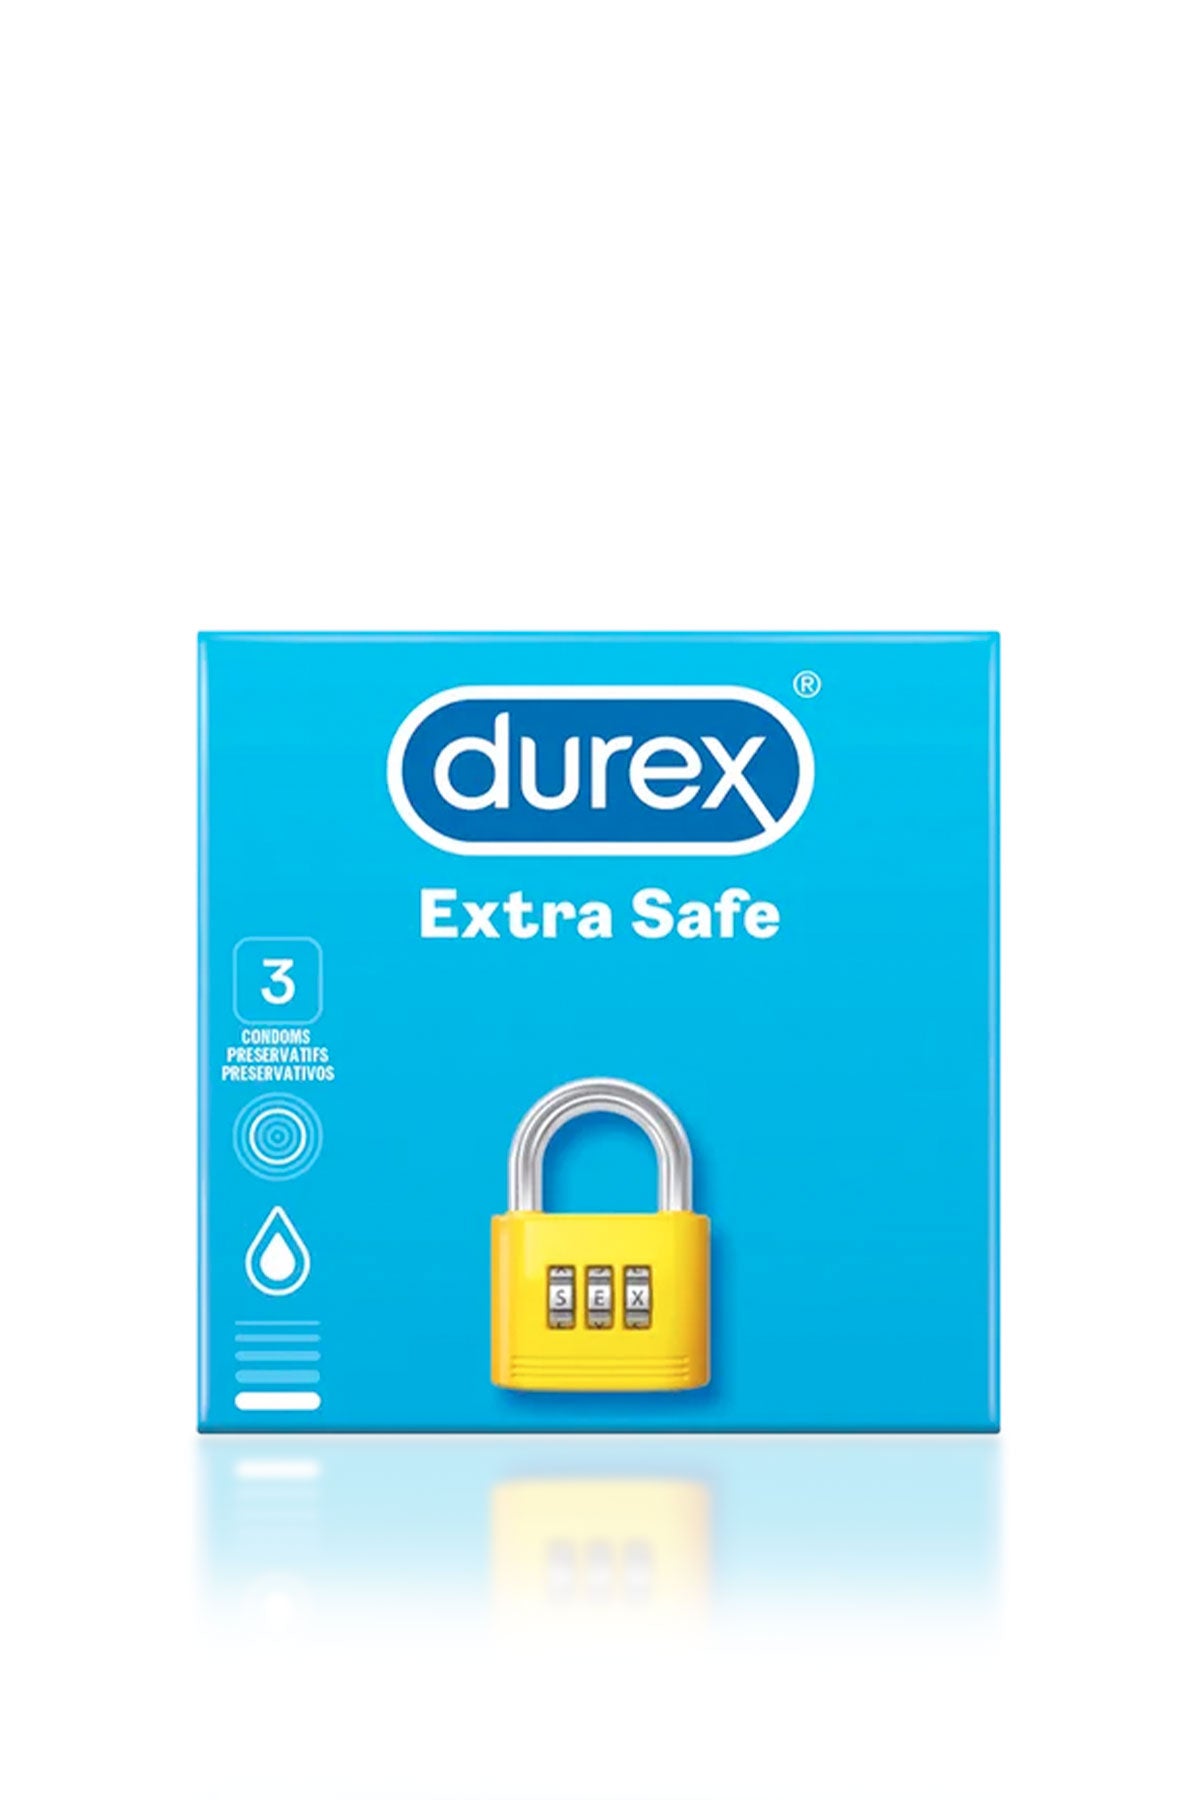 Extra Safe Condoms by Durex